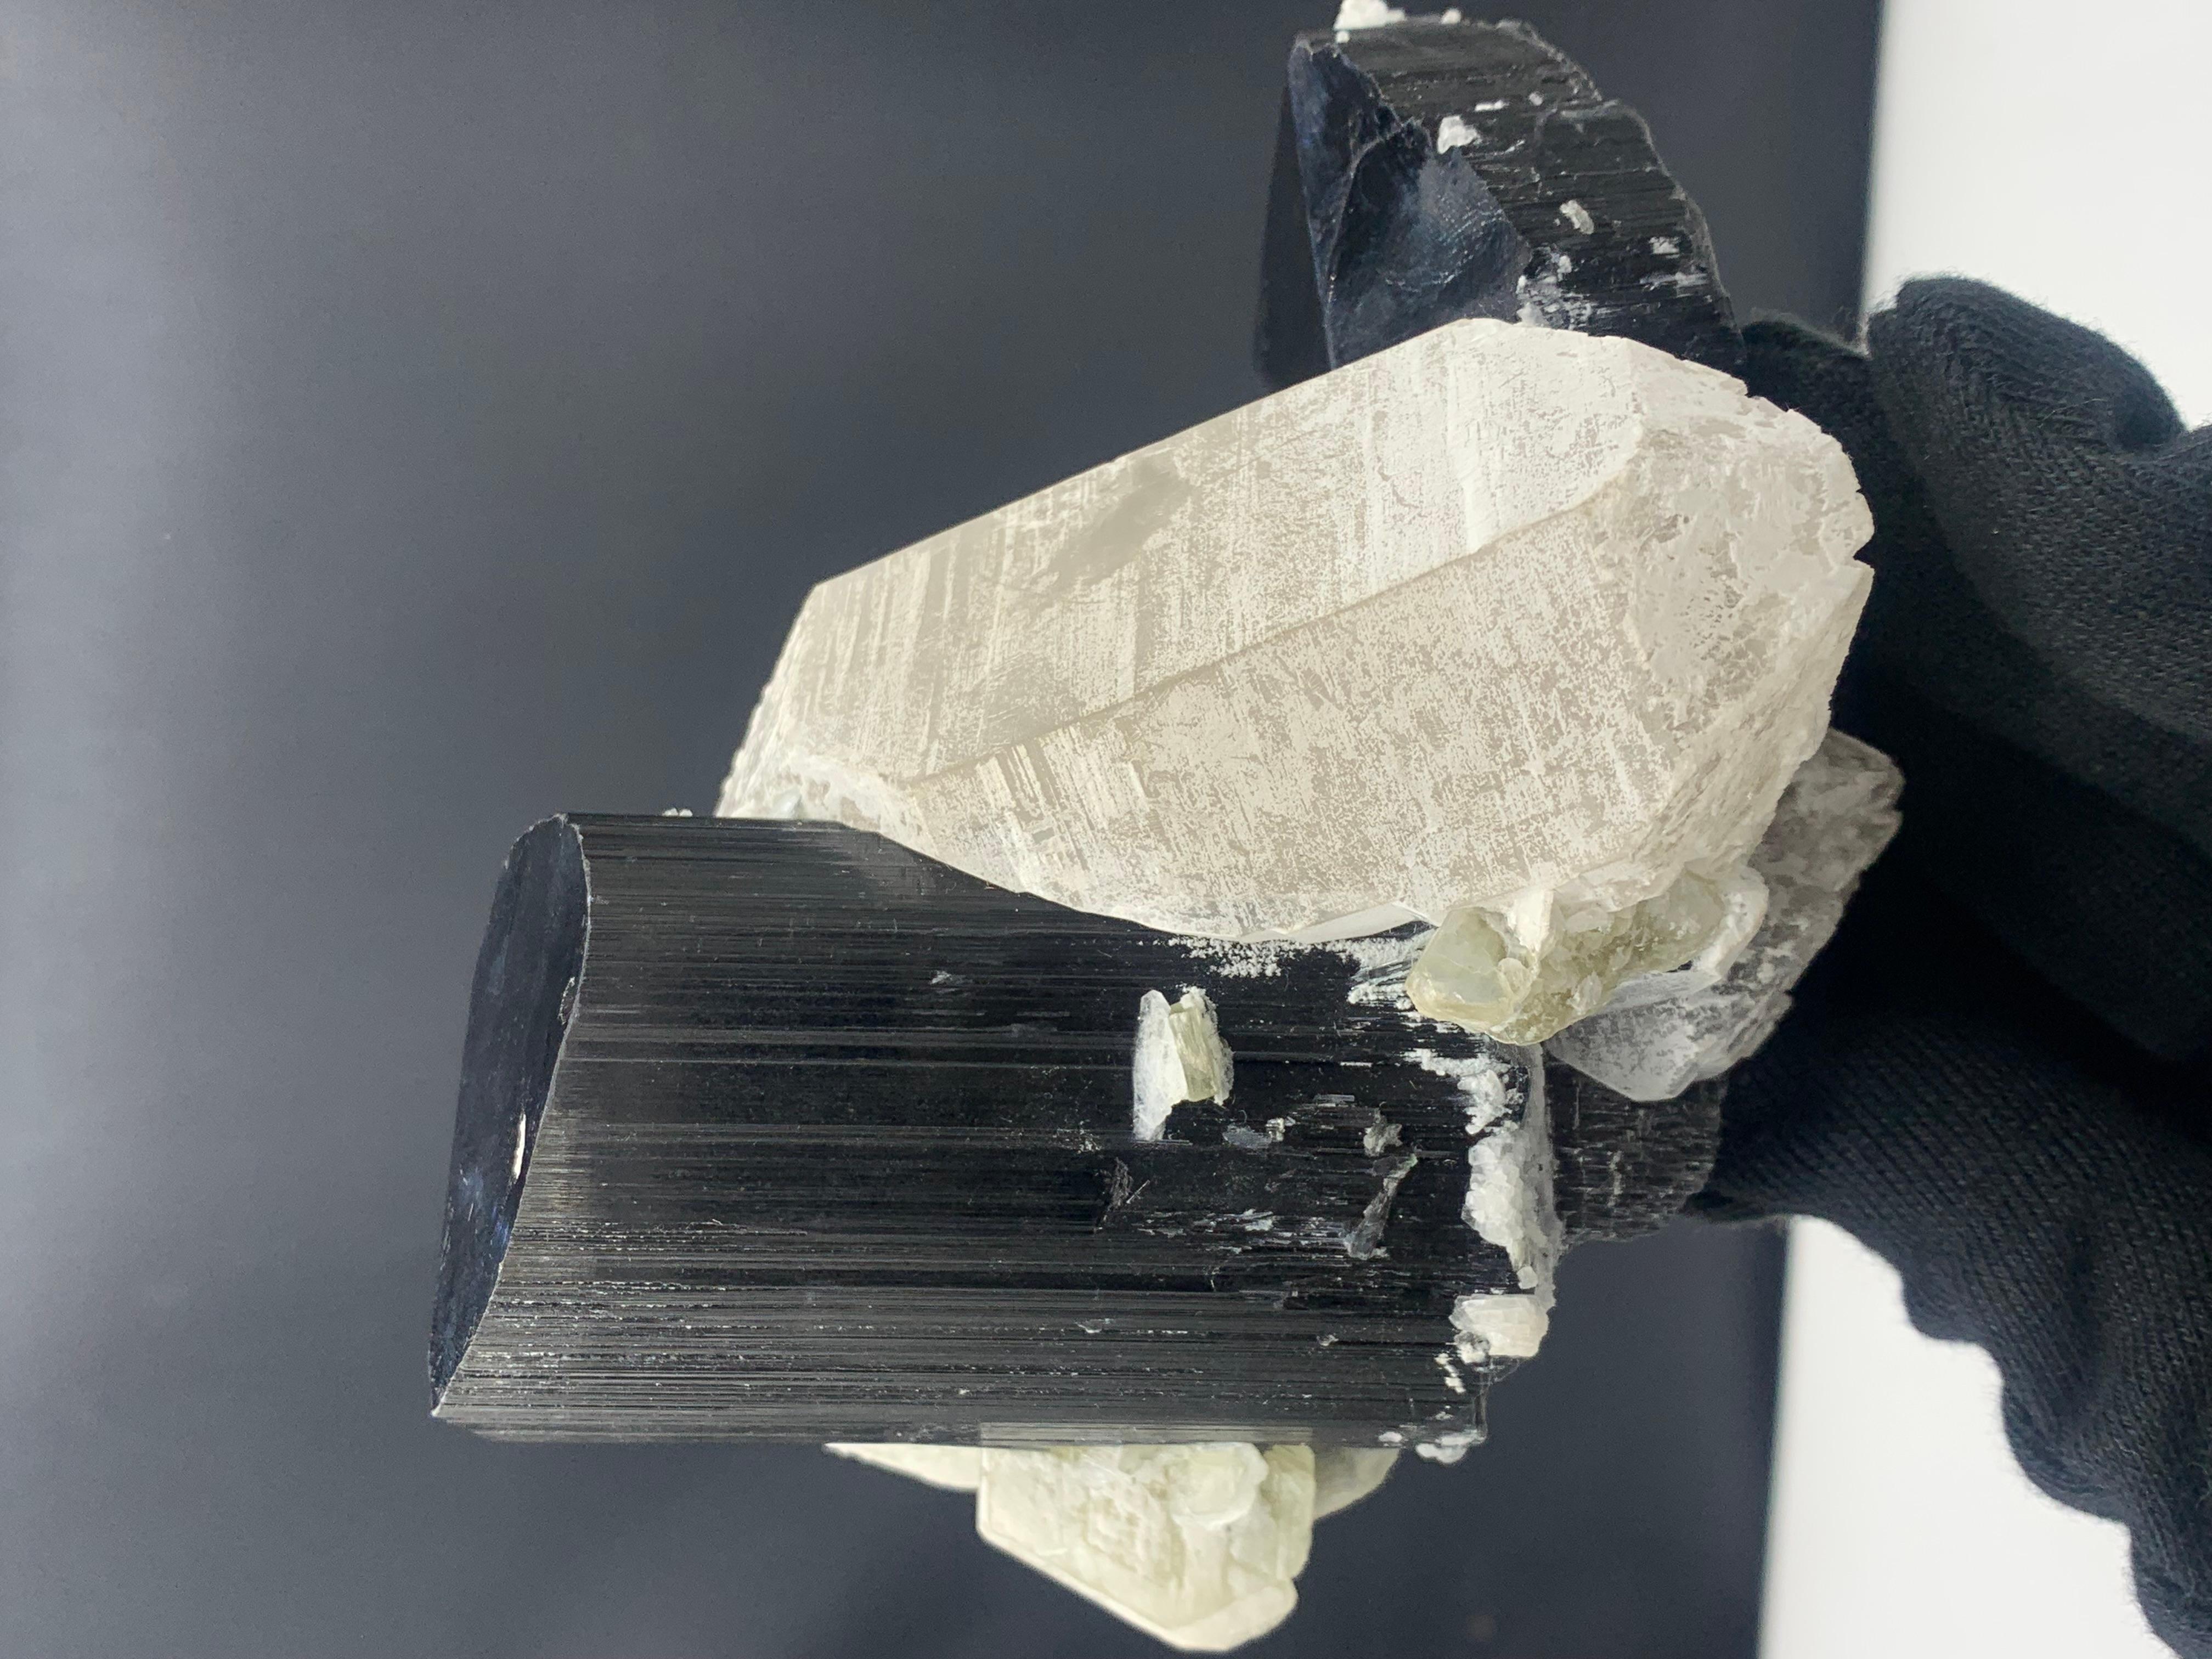 Exquisite schwarze Turmalin-Exemplar 911 Gramm mit Quarzbesatz aus Pakistan 

Gewicht: 911 Gramm
Abmessung: 11.1 x 13 x 8.1 Cm
Herkunft: Skardu, Pakistan 

Turmalin ist ein kristallines Silikatmineral, in dem Bor mit Elementen wie Aluminium, Eisen,